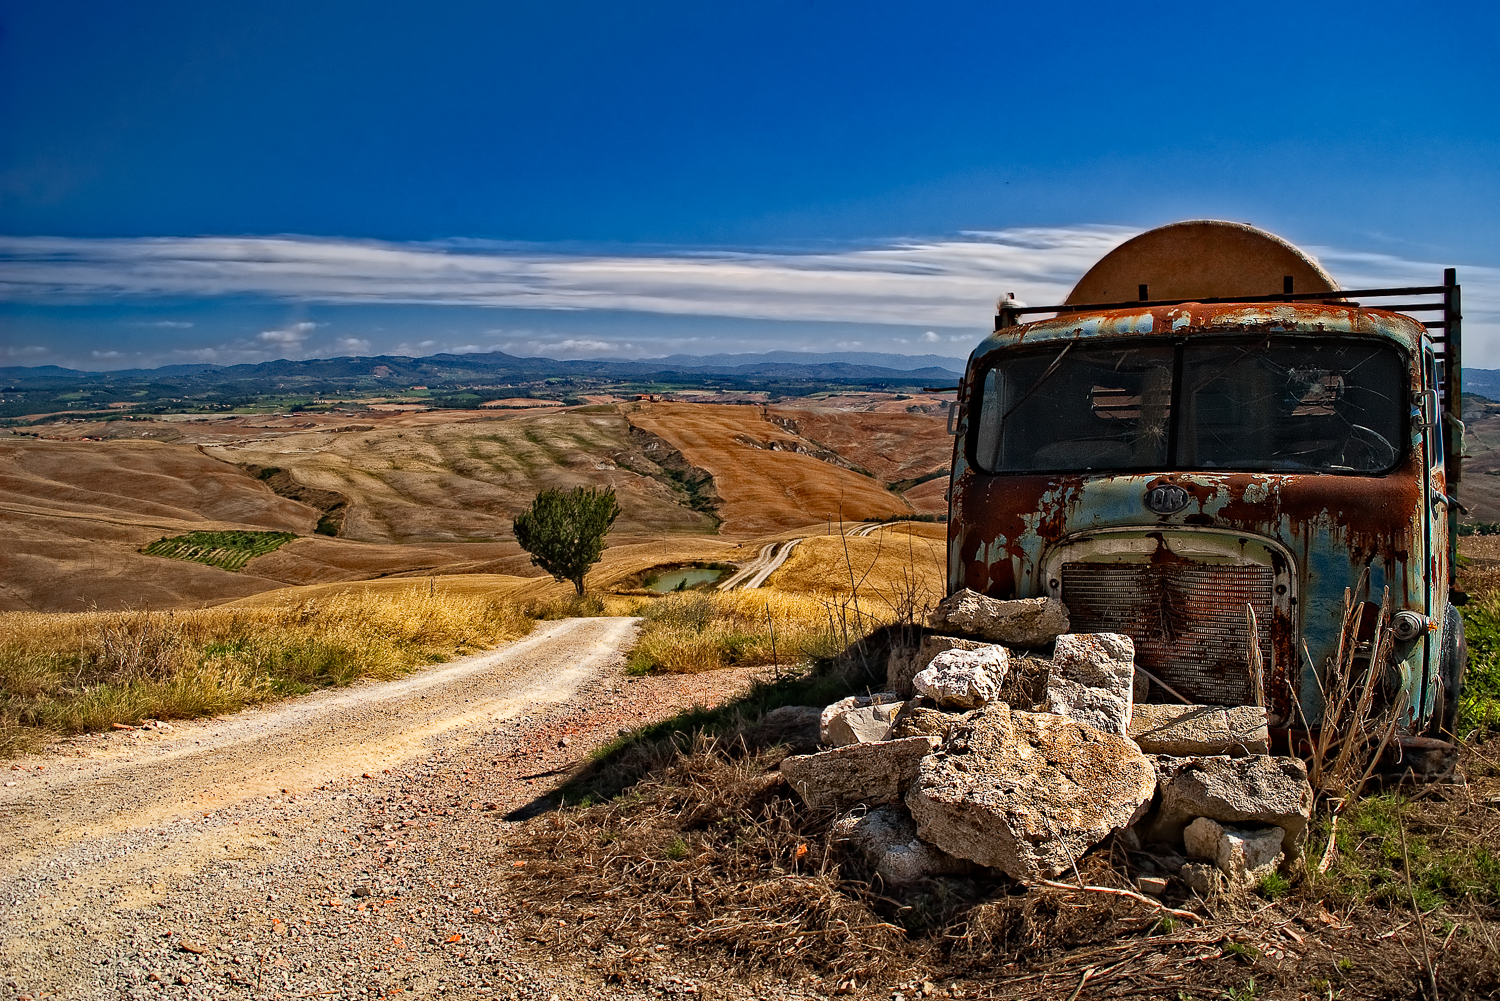 The truck, Toscana, Italy